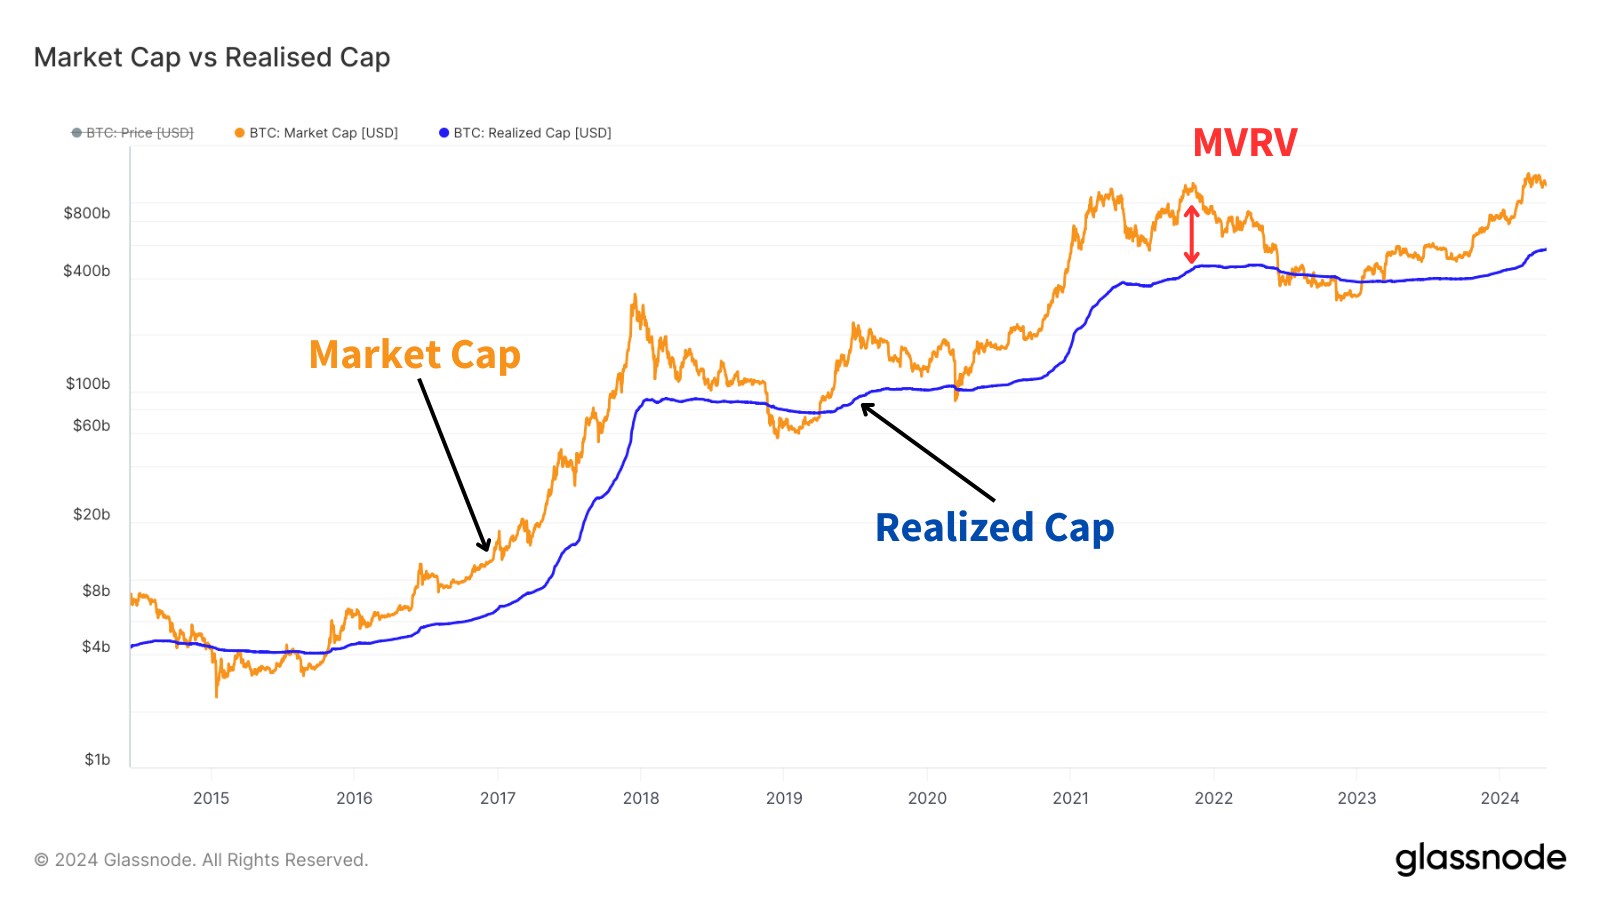 Image représentant la market cap du Bitcoin sur le marché et le valeur réelle de celui-ci. Le MVRV calcul l'écart entre les deux.
On remarque que la valeur réelle est souvent en dessous du Market Cap, suggérant que le prix est surrévalué. Mais lorsque celui-ci passe au dessus, on est dans une période propice à l'investissements puisque le Bitcoin se retrouve sous-évalué.